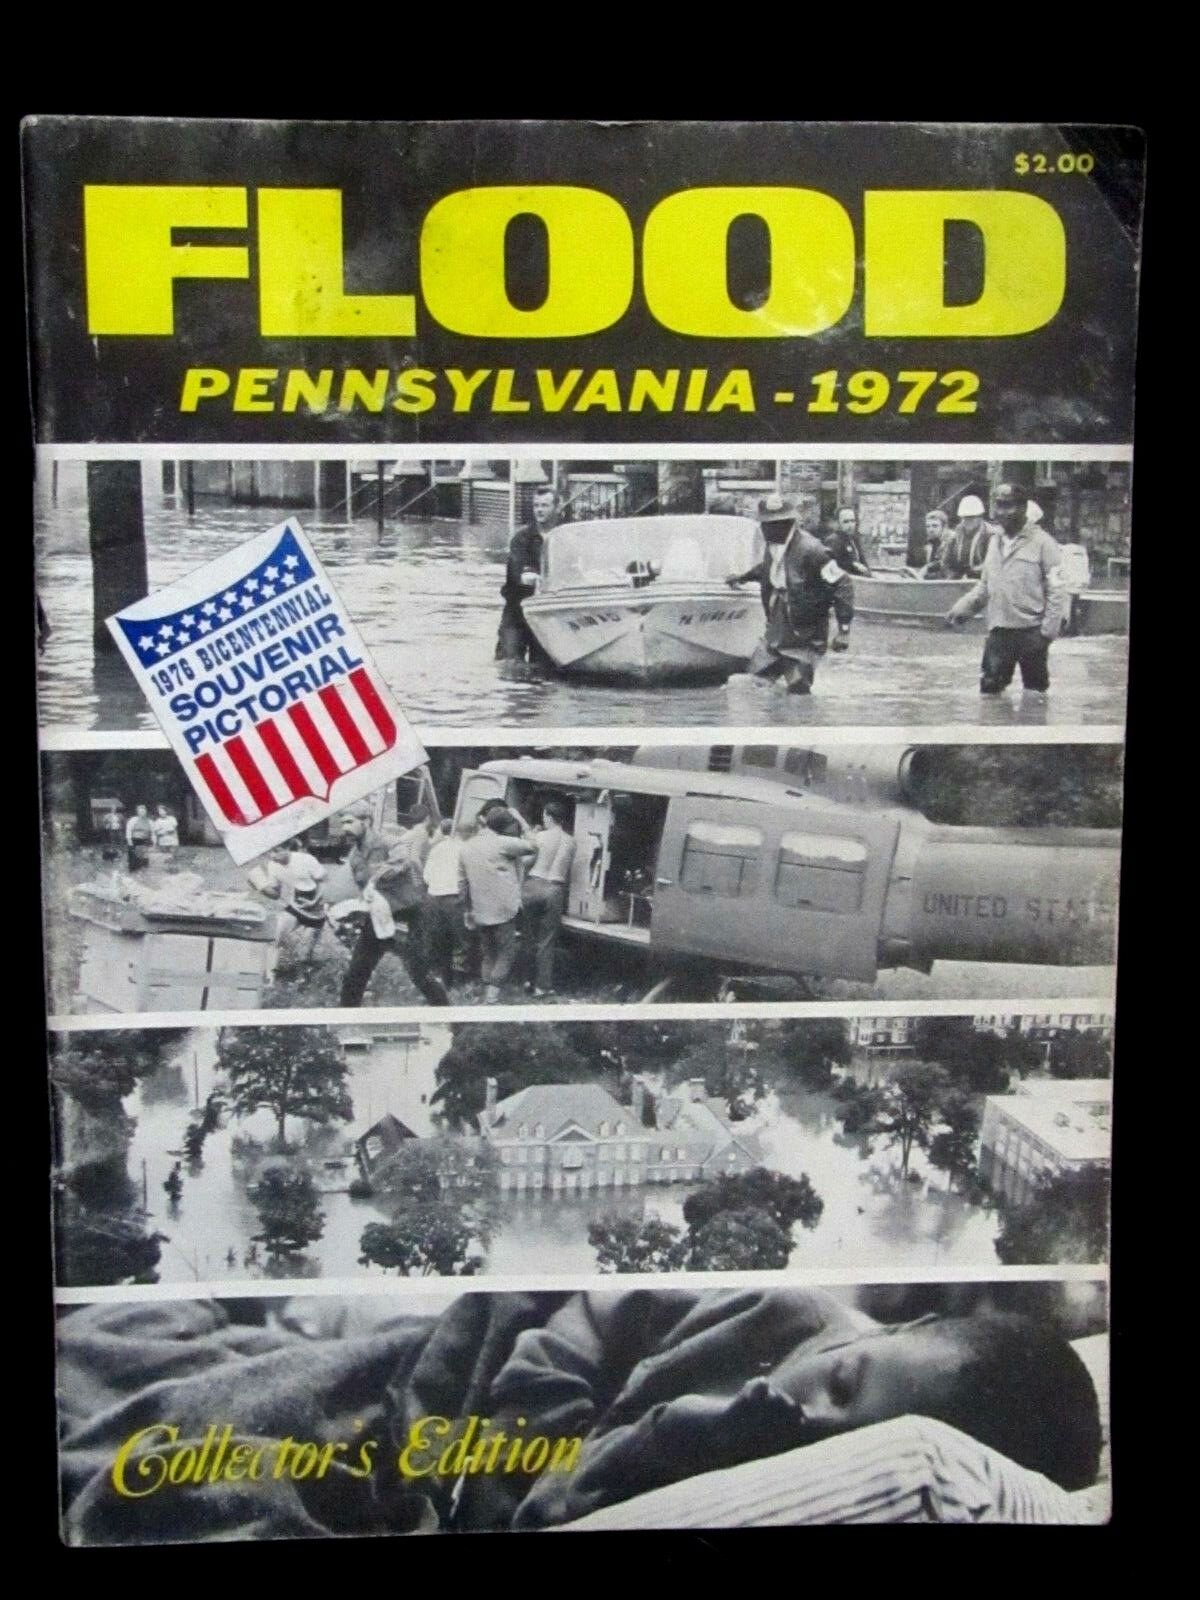 1972 Flood Pennsylvania Collectors Edition Bicentennial 1976 Souvenir Pictorial